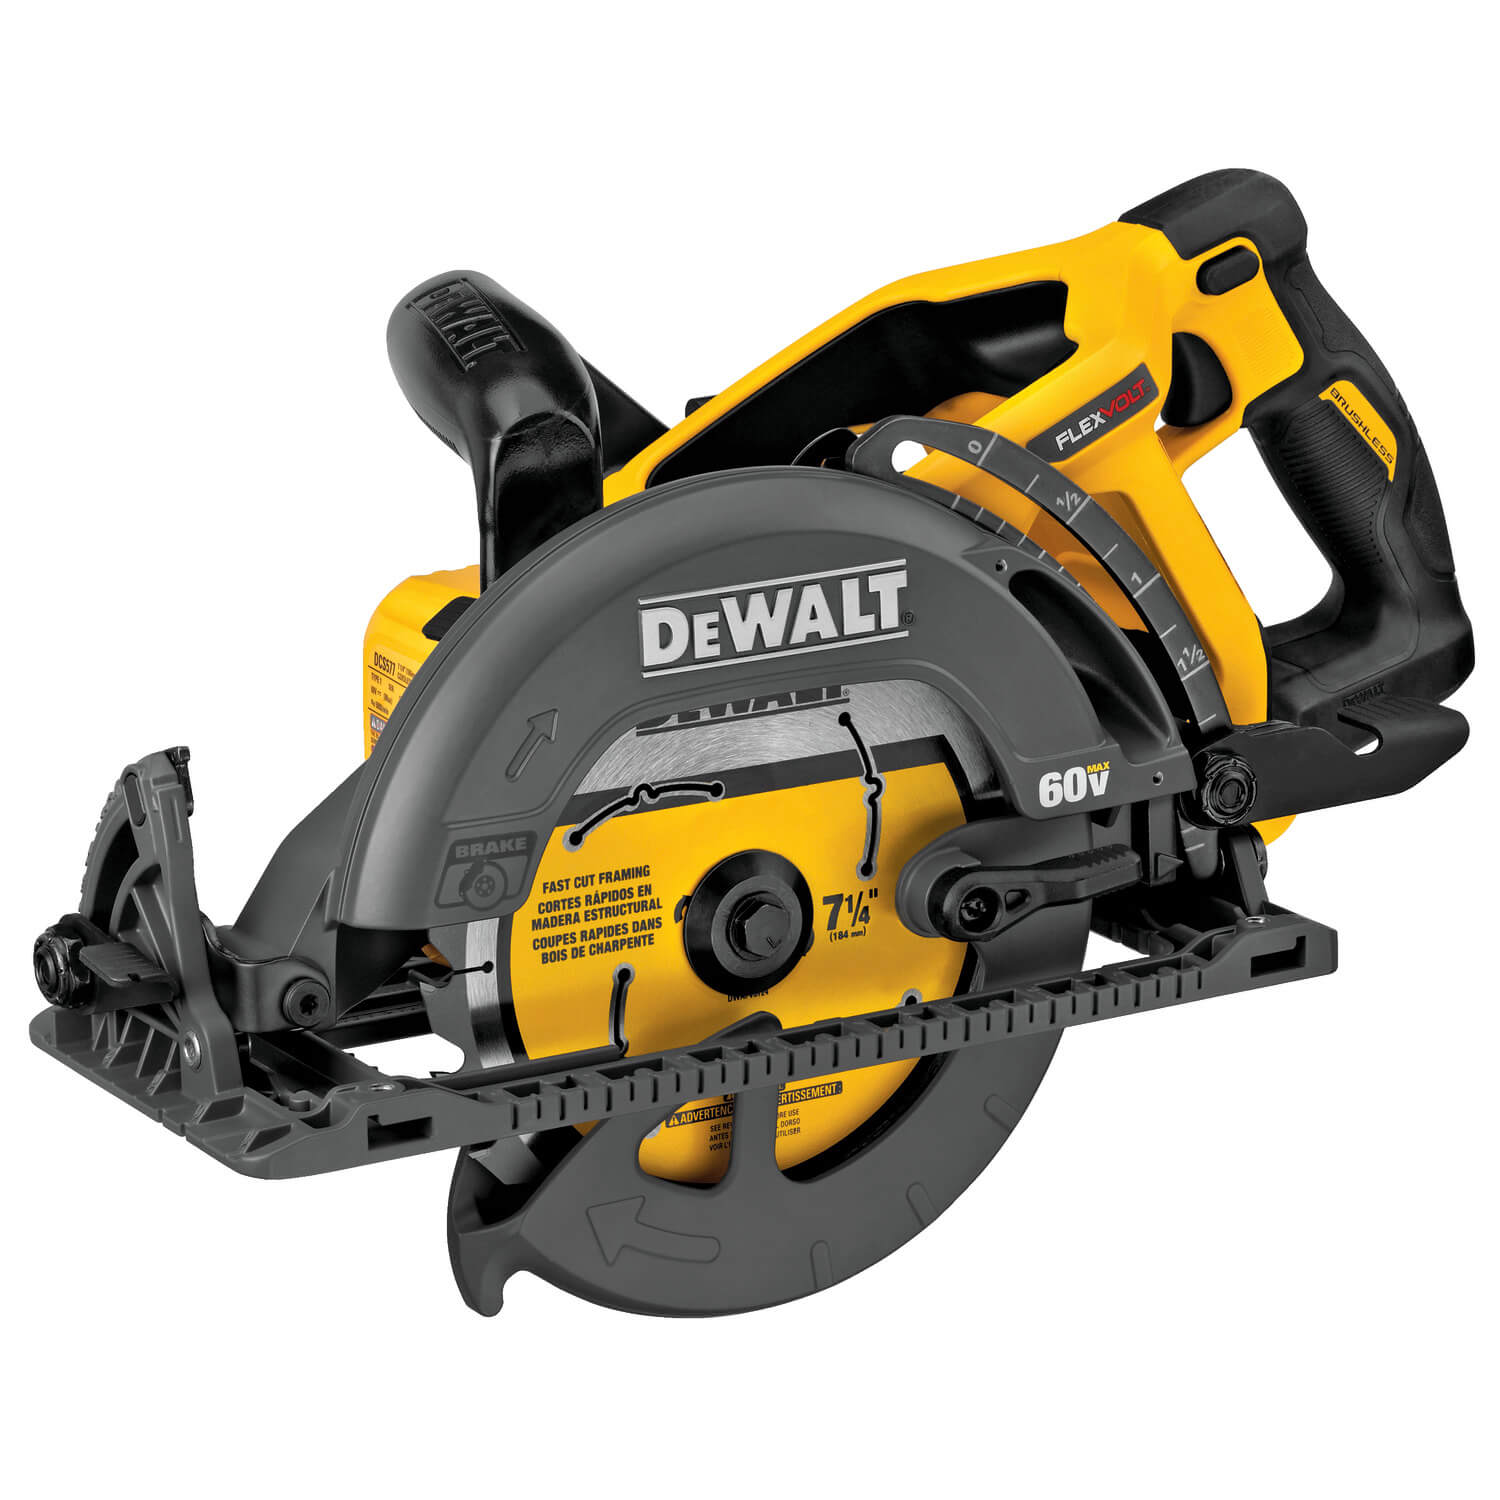 Dewalt DCS577B - FLEXVOLT 7-1/4" Framer Circular Saw- Worm Drive Style - wise-line-tools